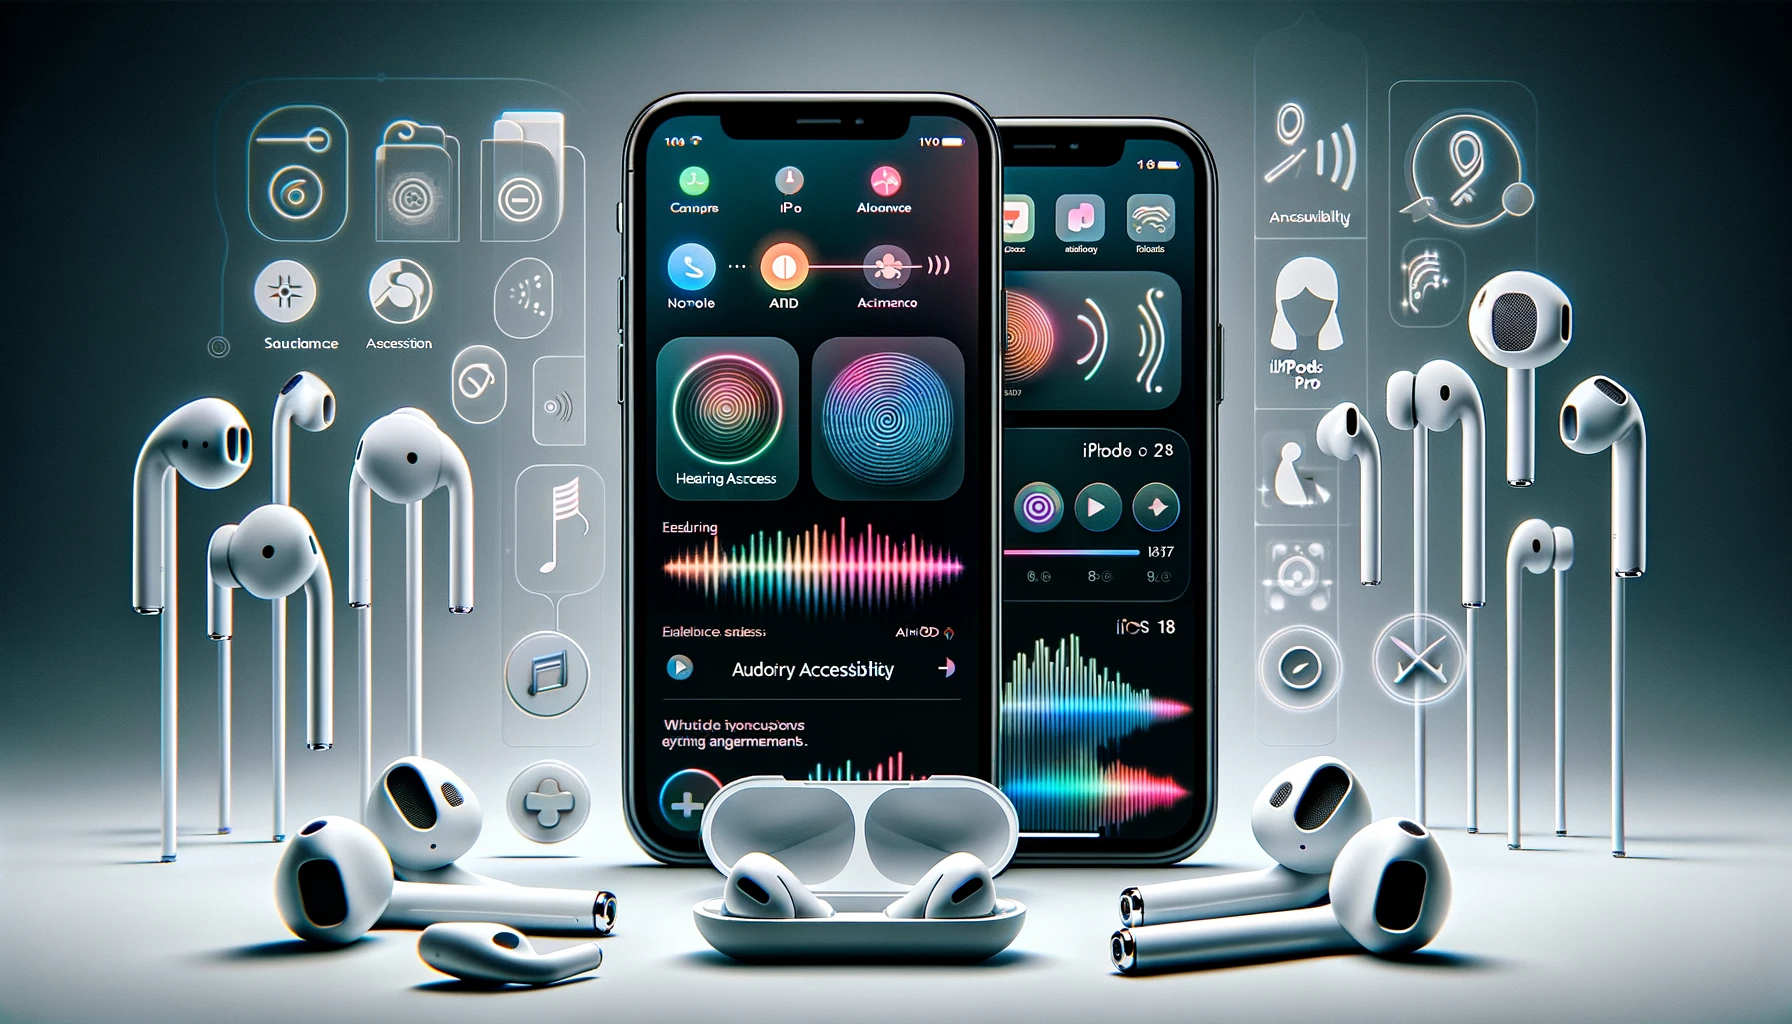 iOS 18 transformará los AirPods Pro en una herramienta de accesibilidad auditiva